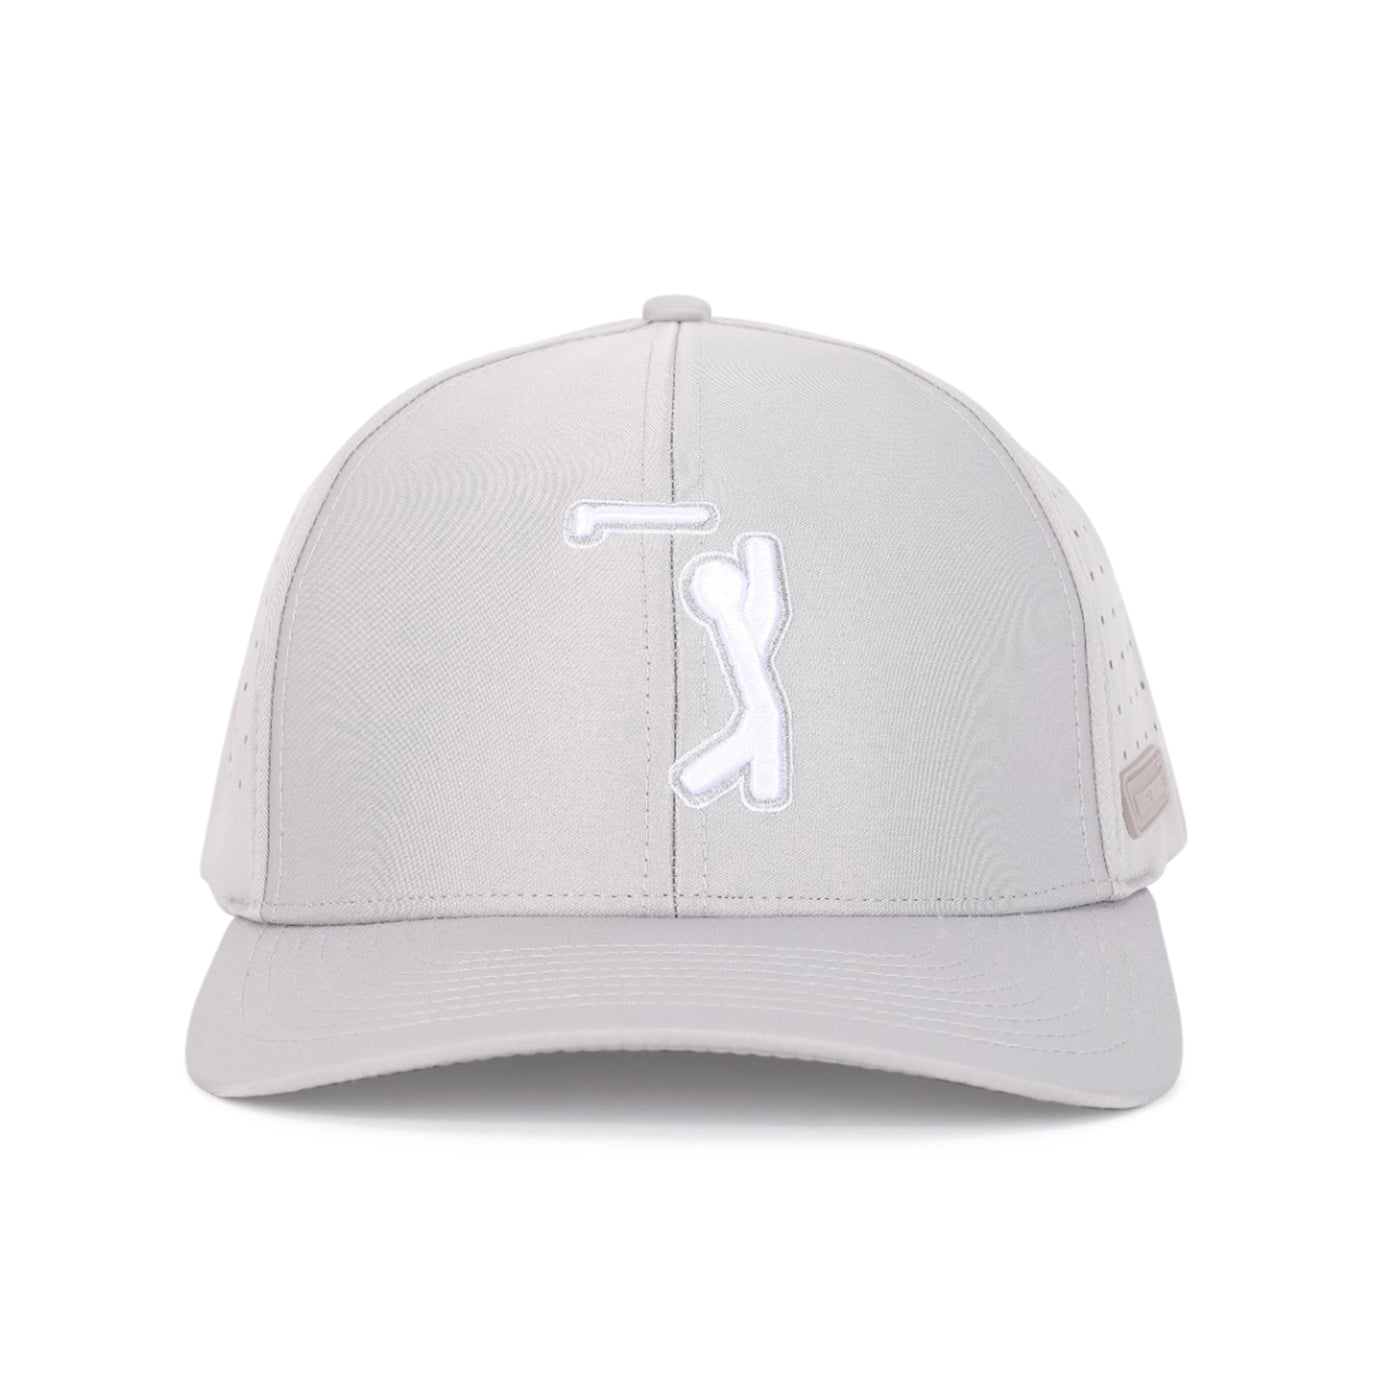 Bogeyman Light Grey - Performance Golf Hat - Stretch Fit